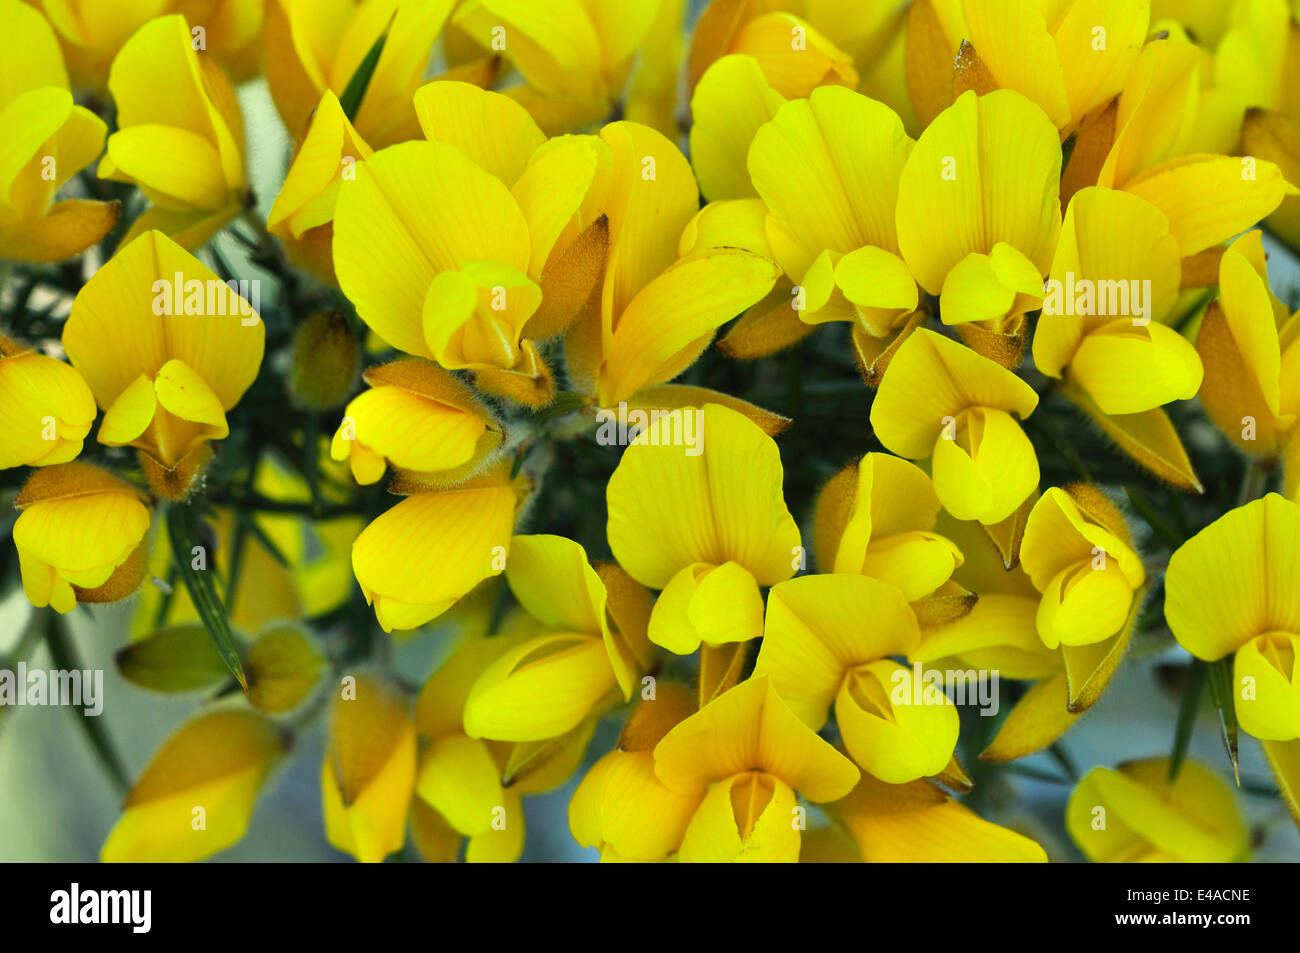 common gorse flowers Stock Photo